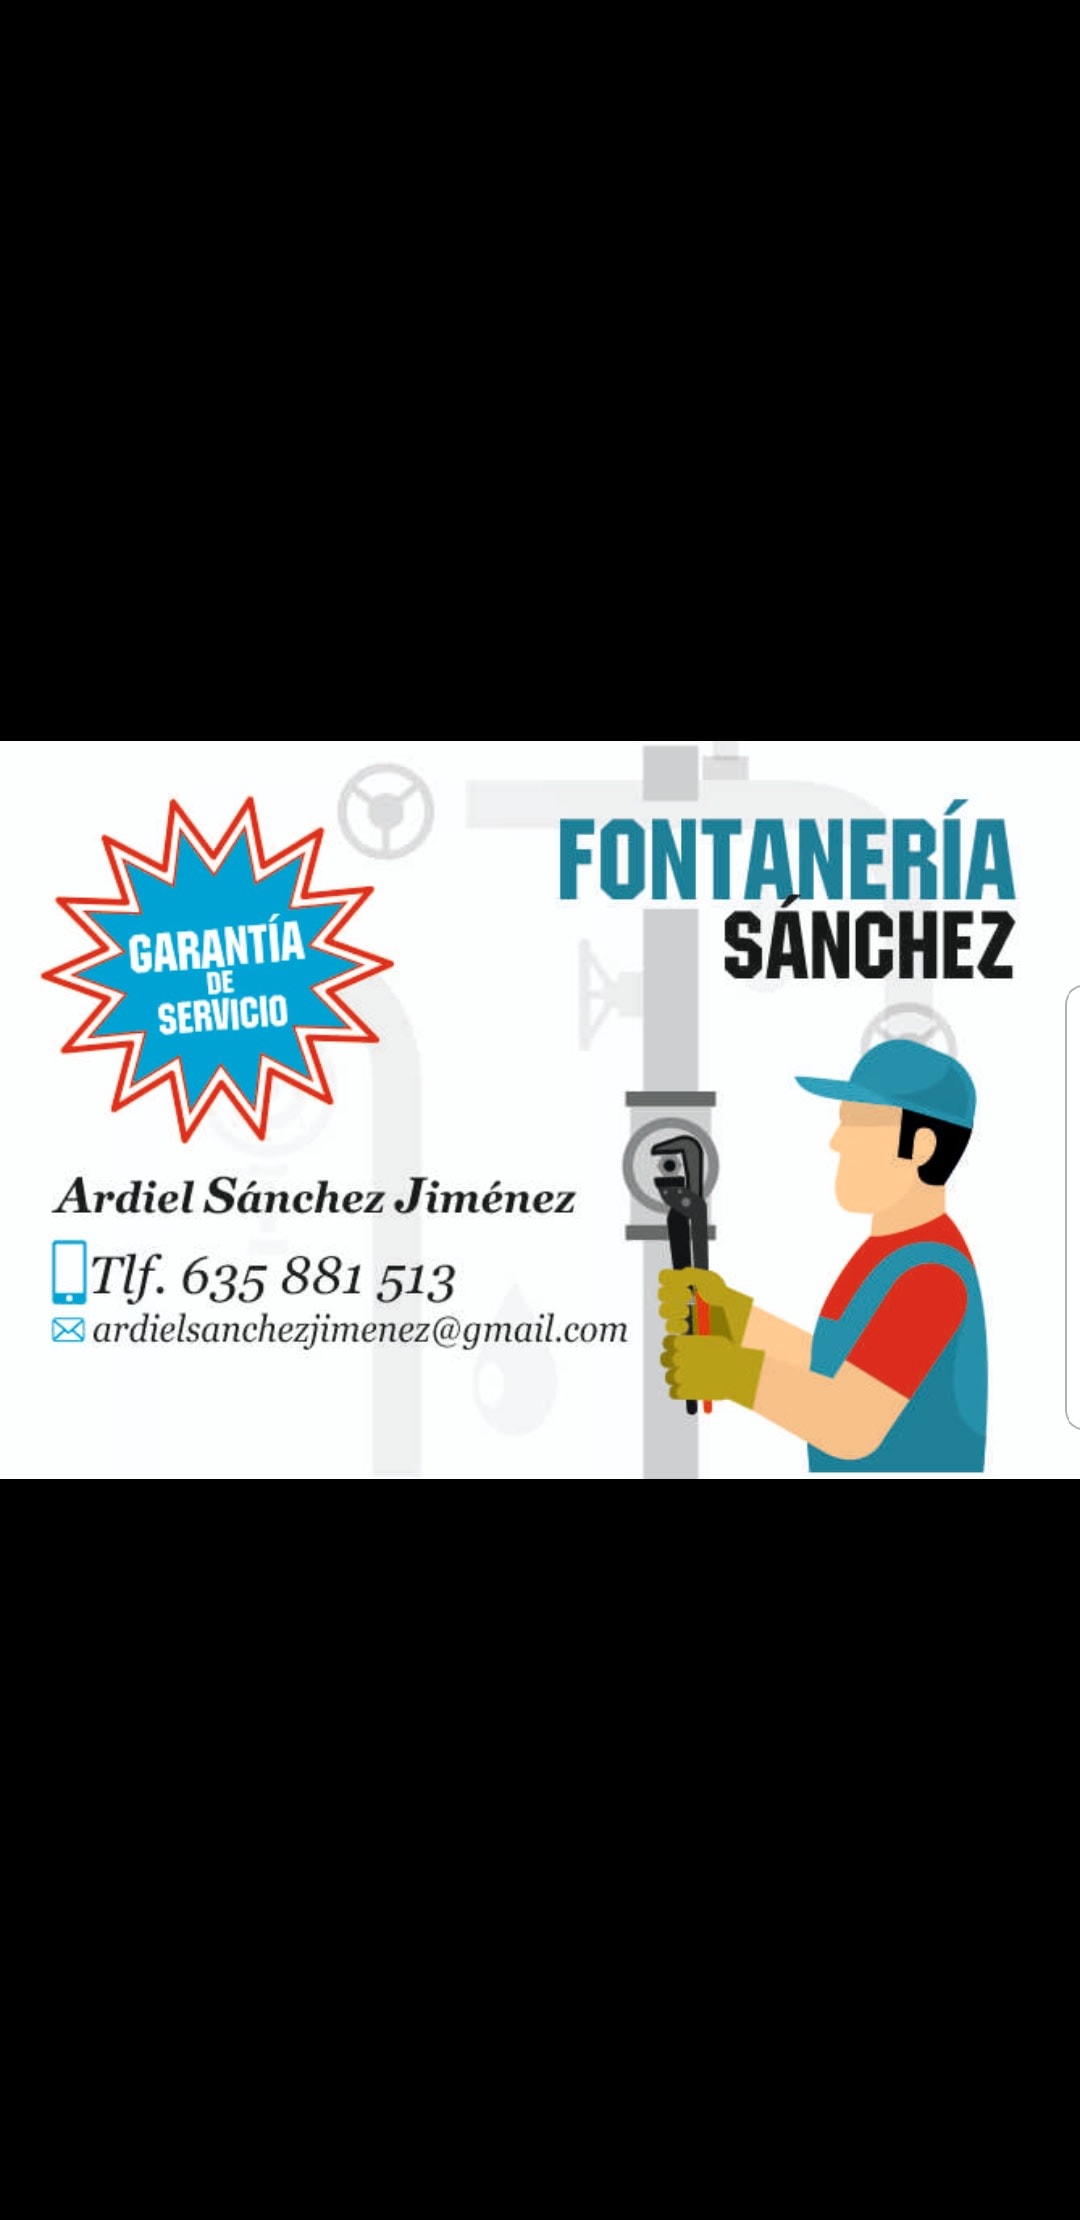 Fontaneria Sanchez